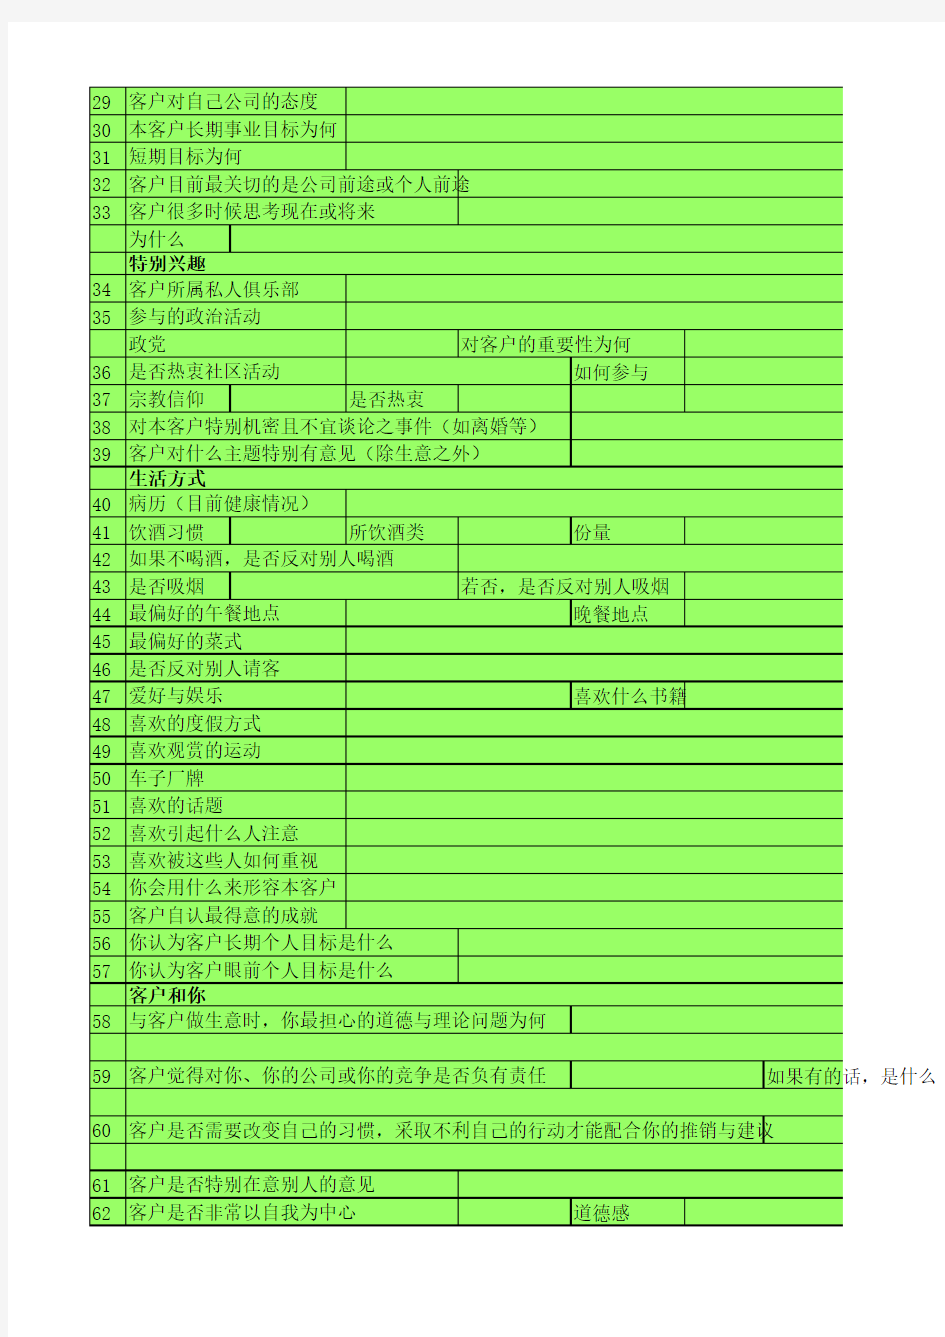 麦凯66客户信息表,2015.11.29更新,中国版